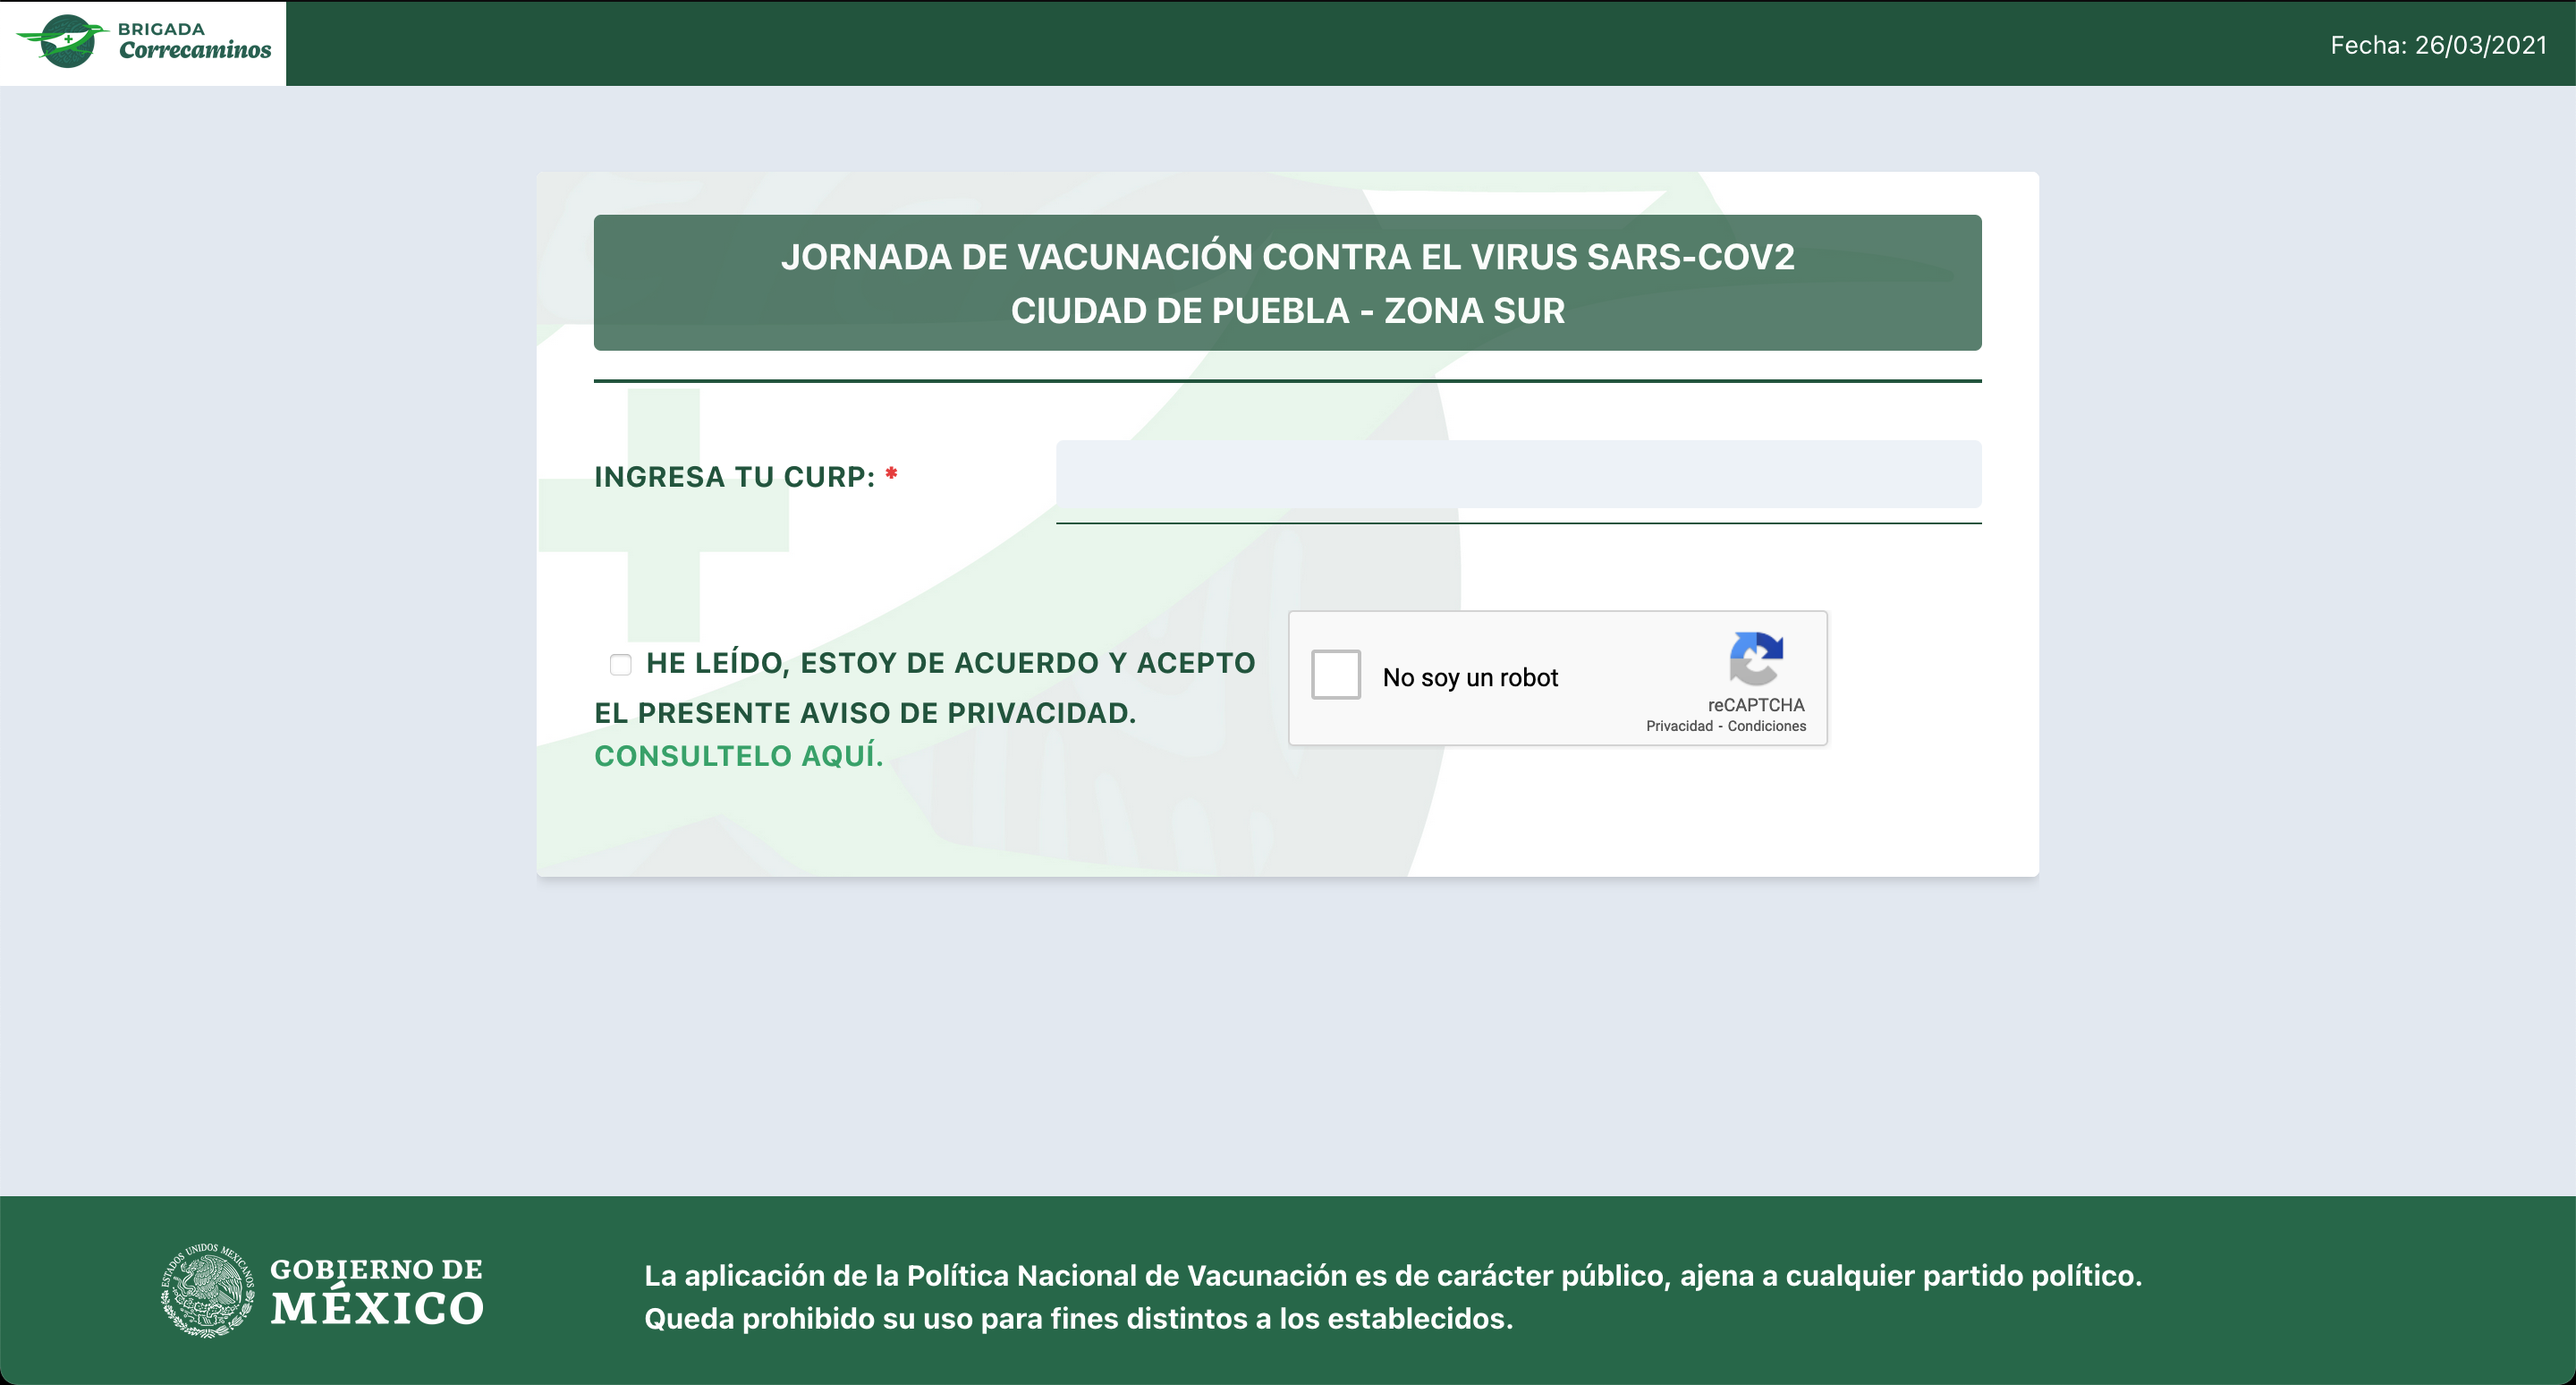 Comienza el registro de vacunación contra Covid19 para la ciudad de Puebla